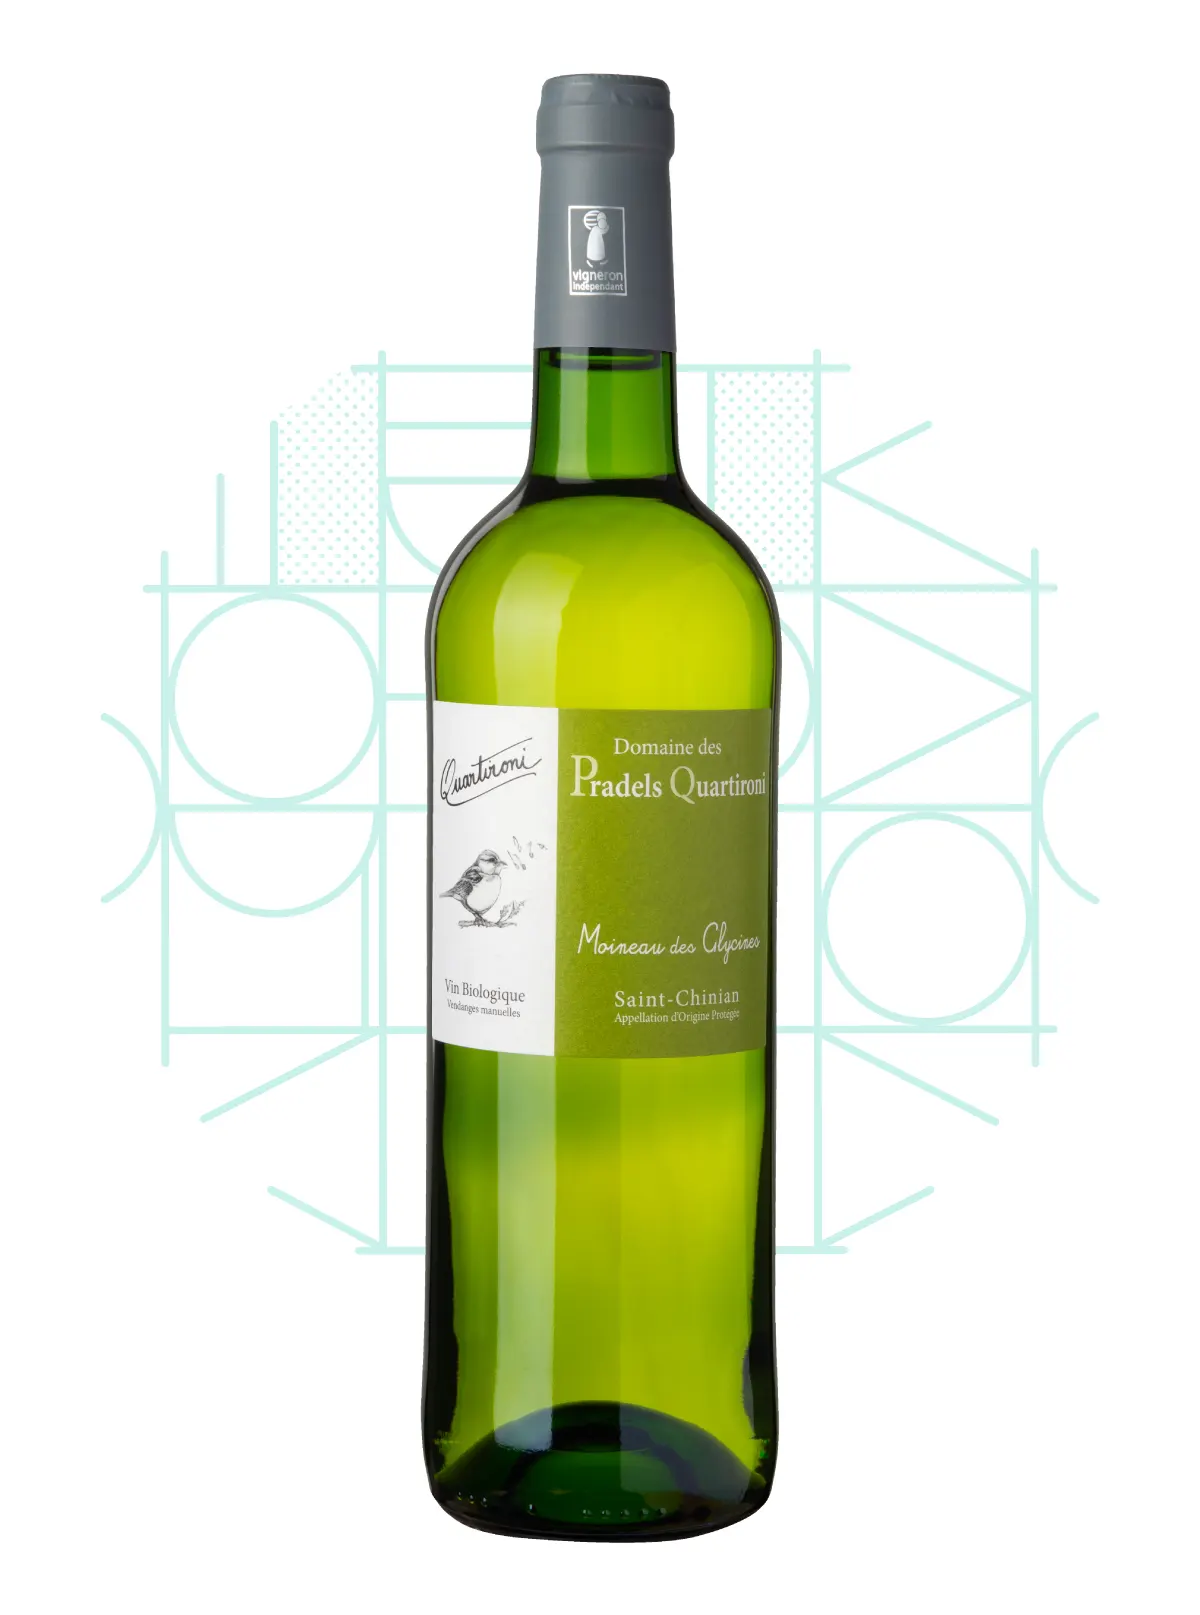 Pradels Quartironi - Vin blanc bio - Cuvée Moineau des Glycines